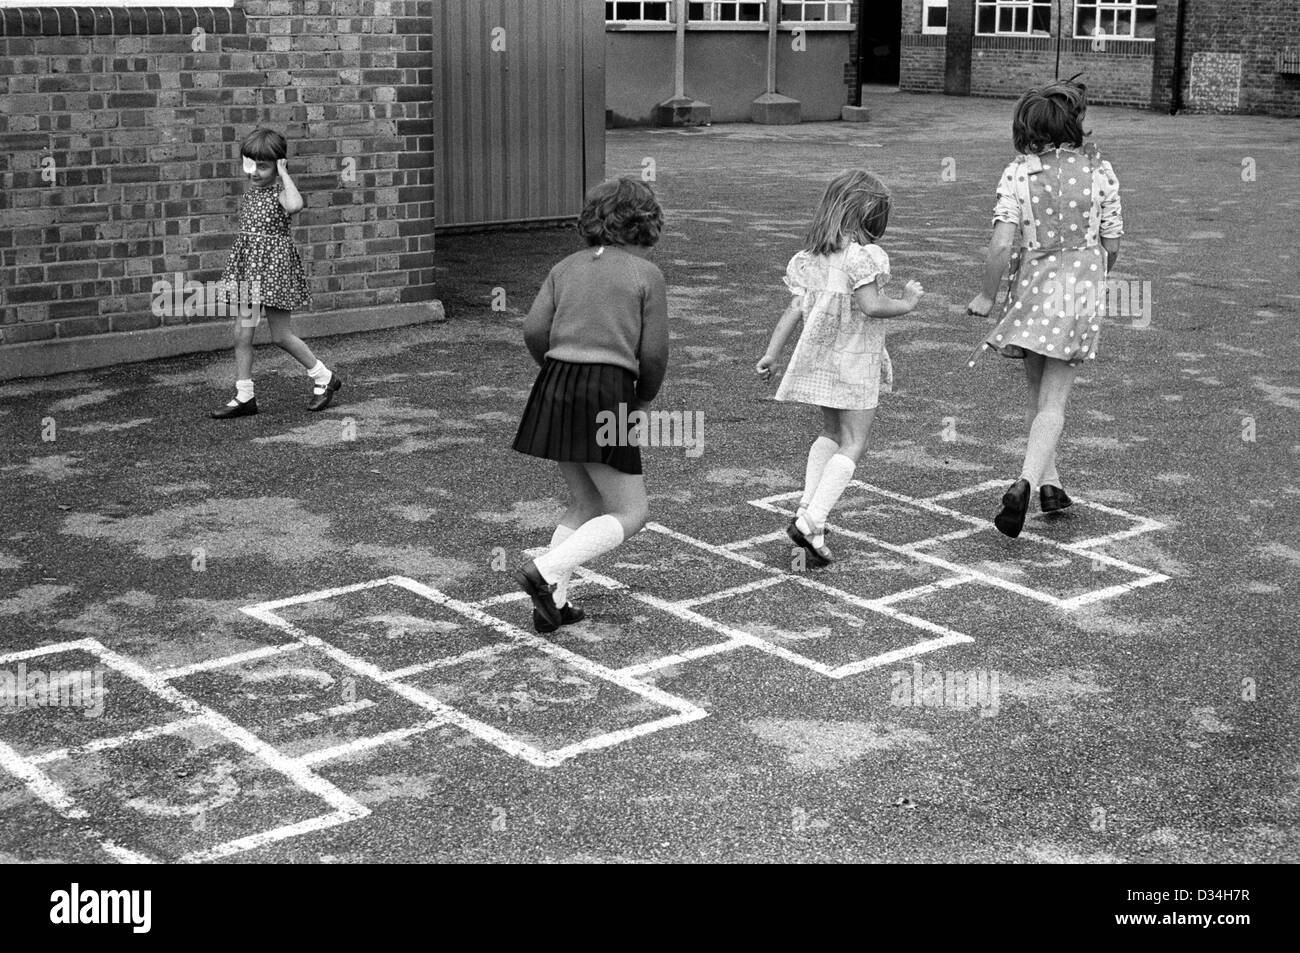 Aire de jeux de l'école primaire Hopscotch hop scotch. Filles jouant ensemble. Sud de Londres. Années 1970 Grande-Bretagne. La jeune fille à gauche porte un timbre oculaire. HOMER SYKES Banque D'Images